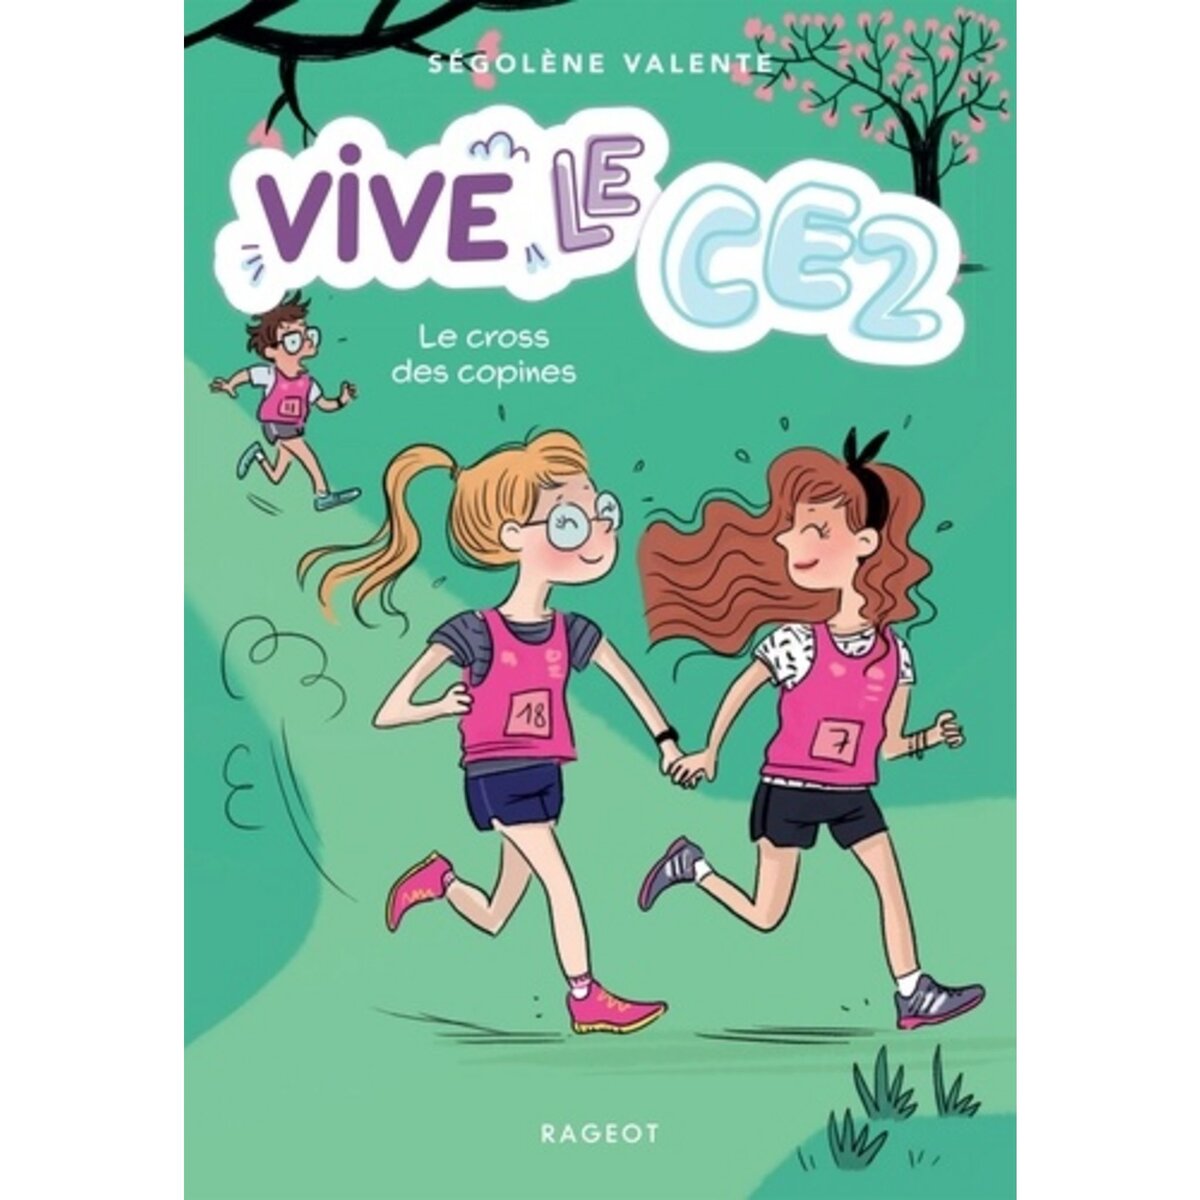  VIVE LE CE2 ! TOME 3 : LE CROSS DES COPINES, Valente Ségolène